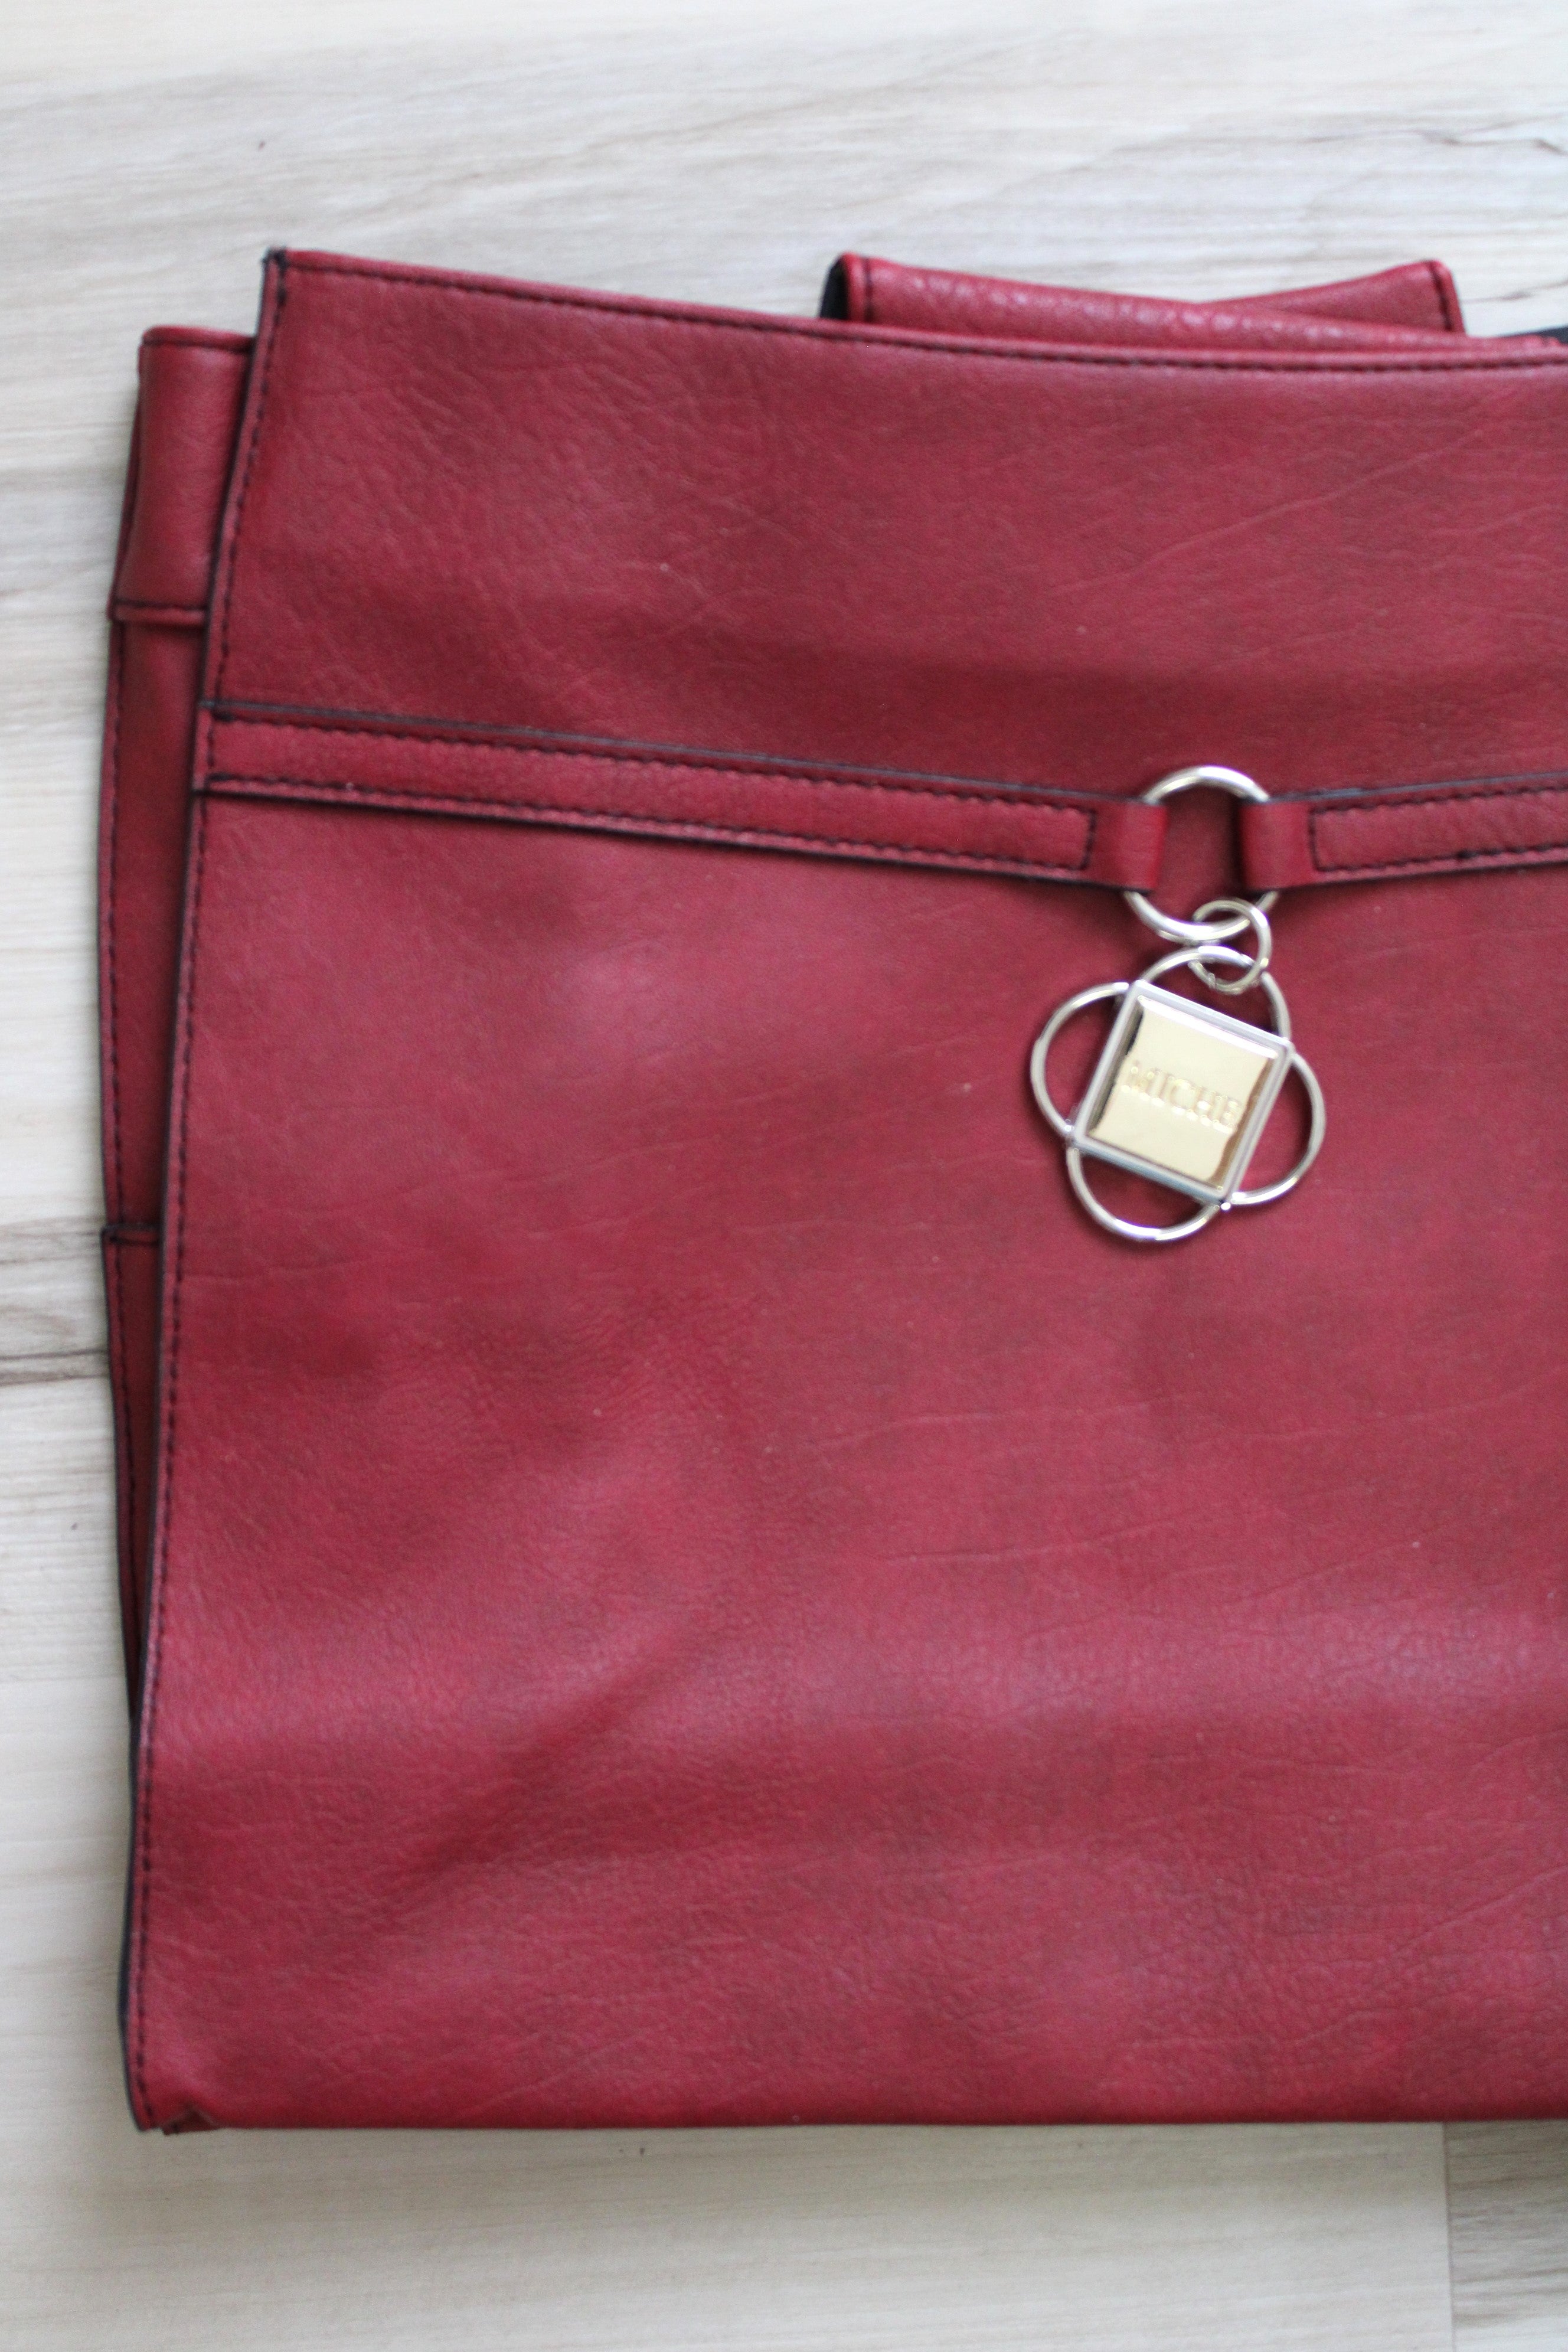 Michael Kors Red/Gold Hobo Shoulder Bag - Default Title - Article